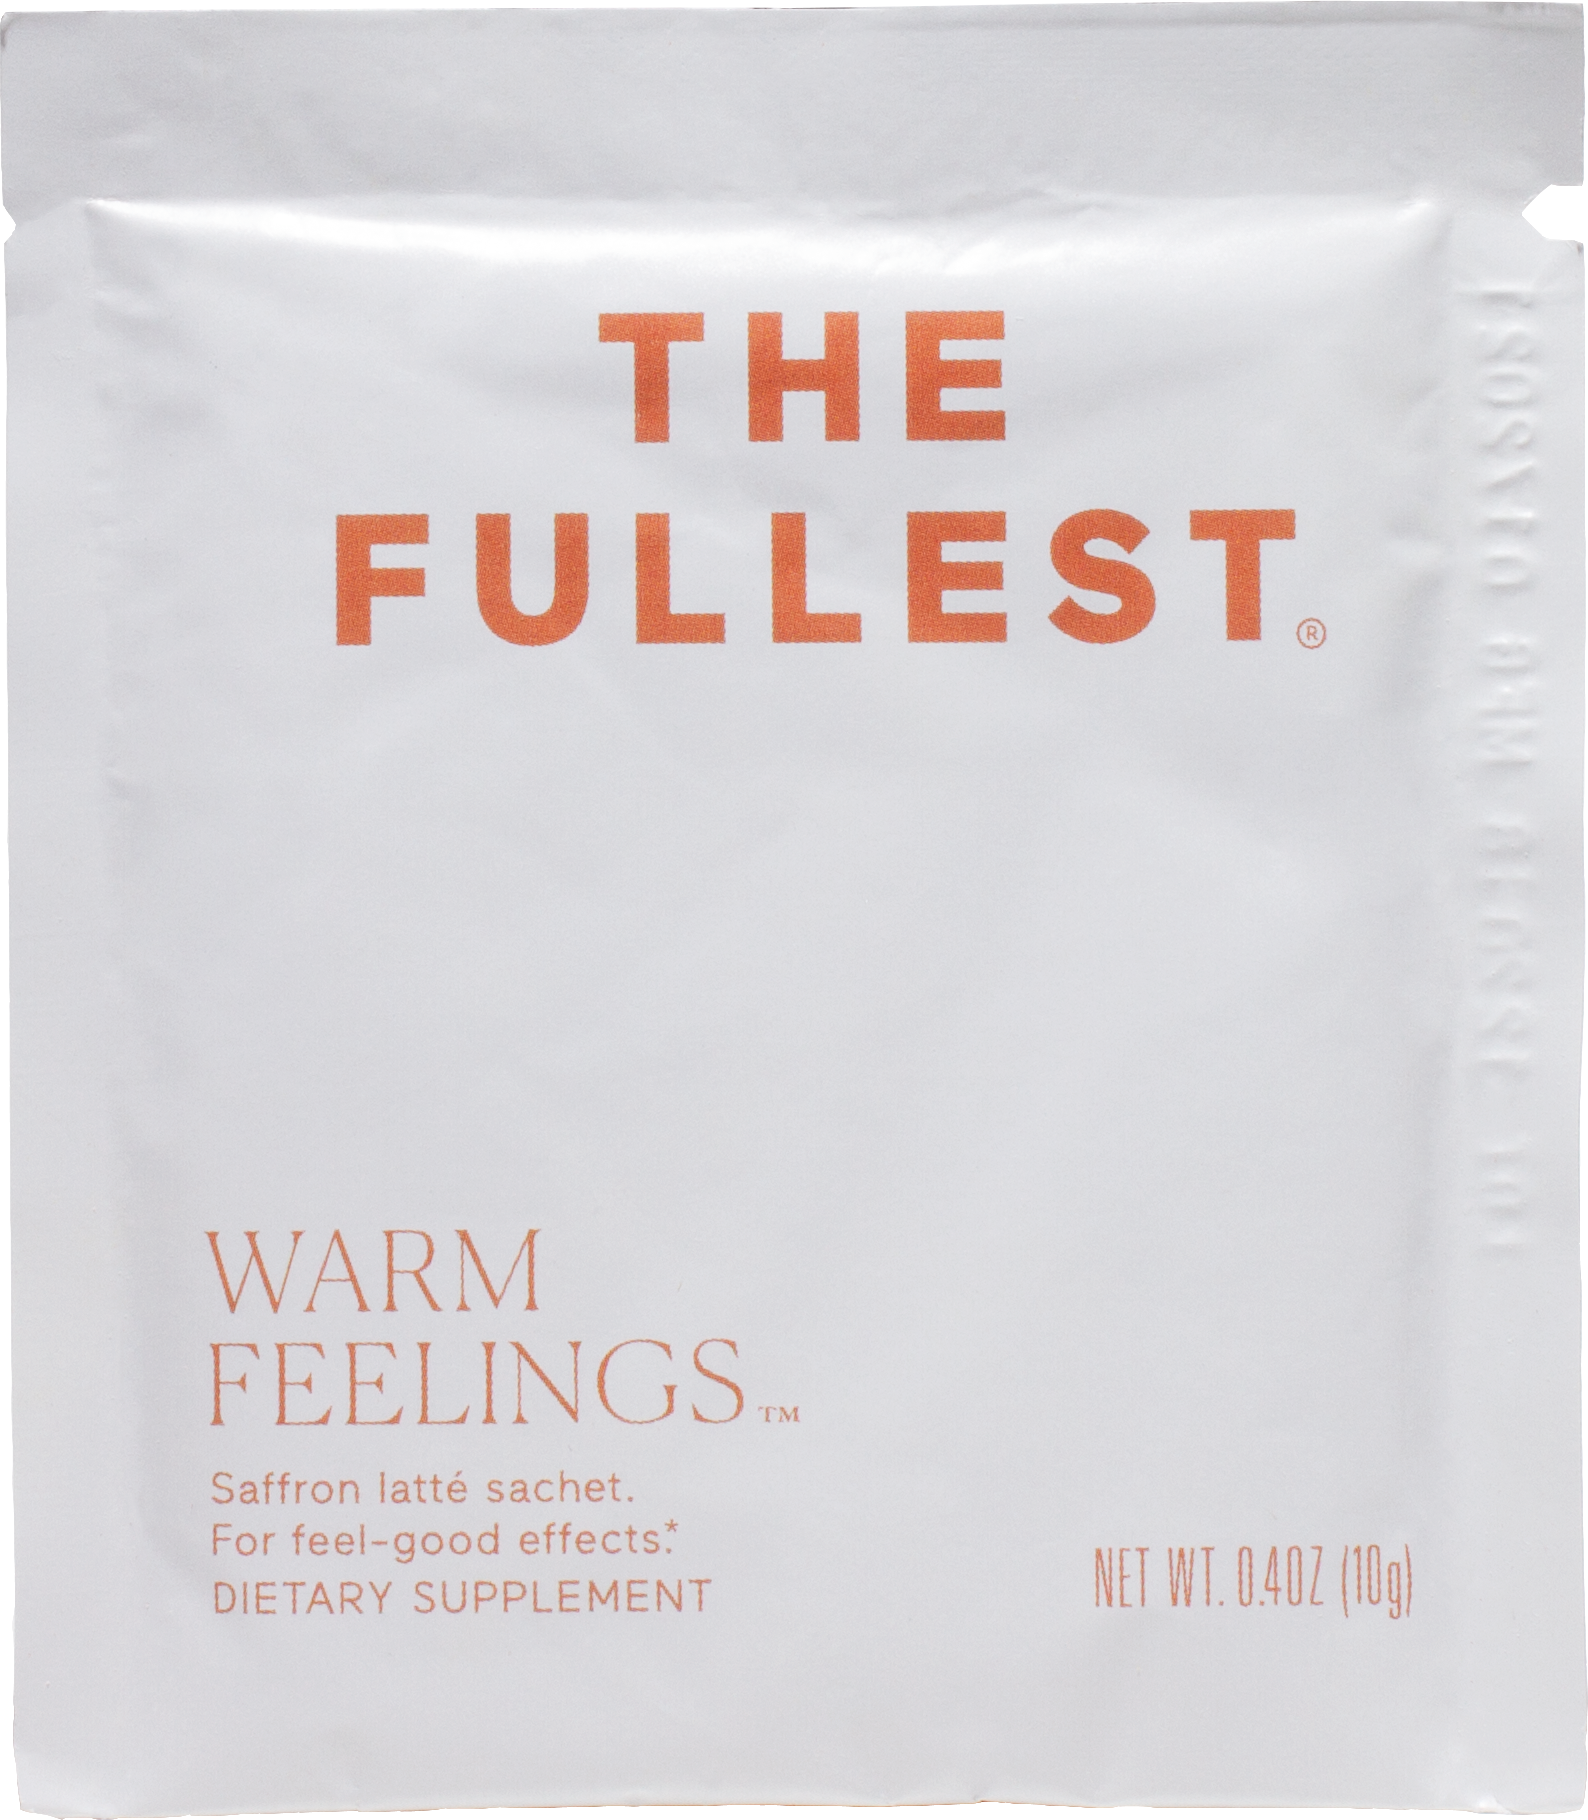 The Fullest Warm Feelings™ Saffron Latte